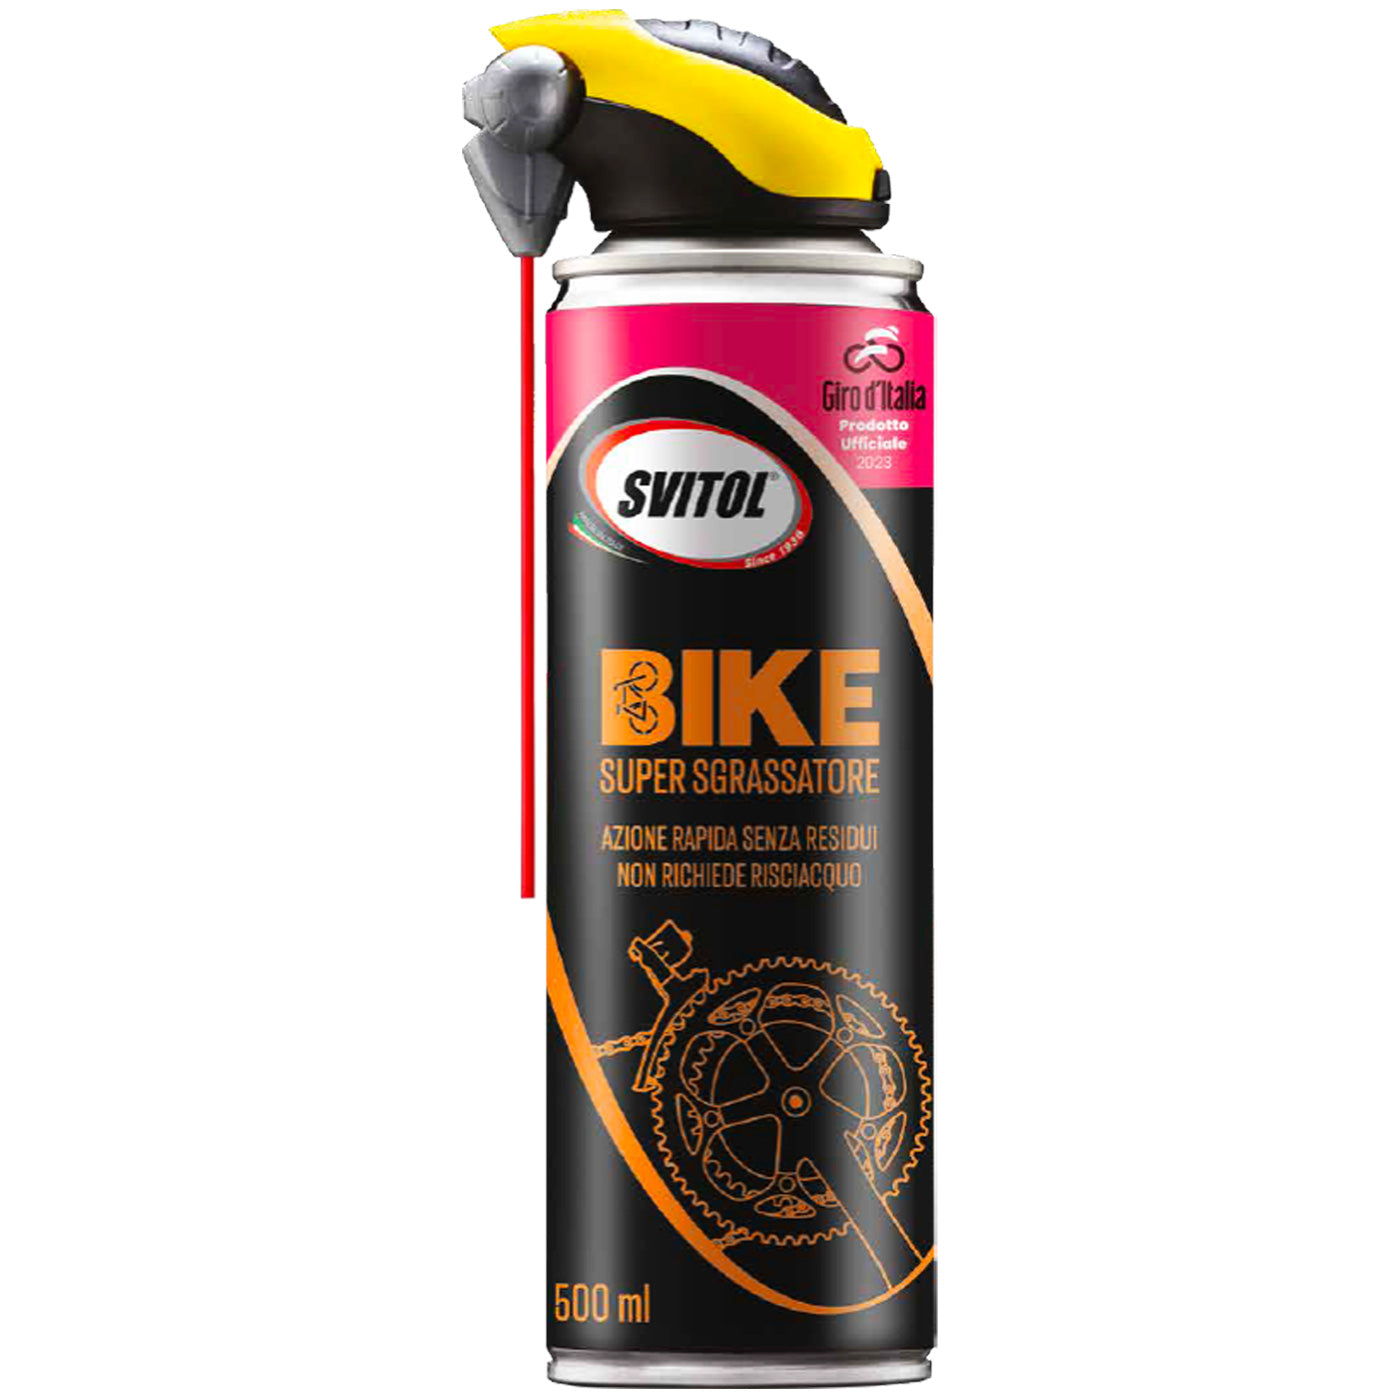 Svitol Giro d'Italia bike cleaning kit